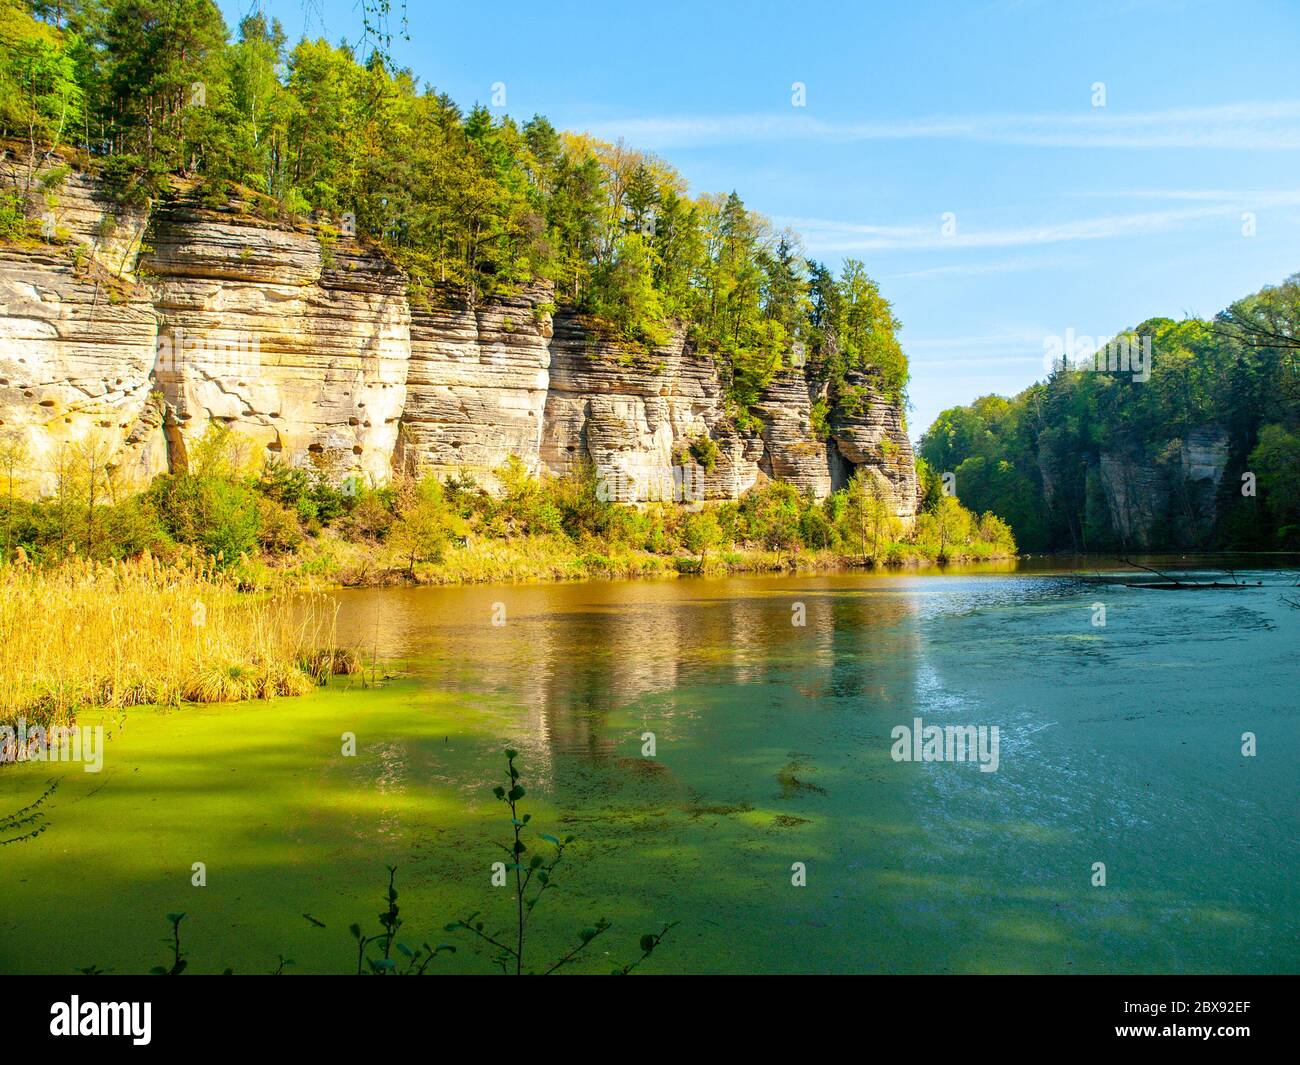 Landschaft mit Sandsteinfelsen und Teich voller grüner Algen. Oborovsky Teich in Plakanek Tal des Böhmischen Paradieses oder Cesky Raj, Tschechische Republik. Stockfoto